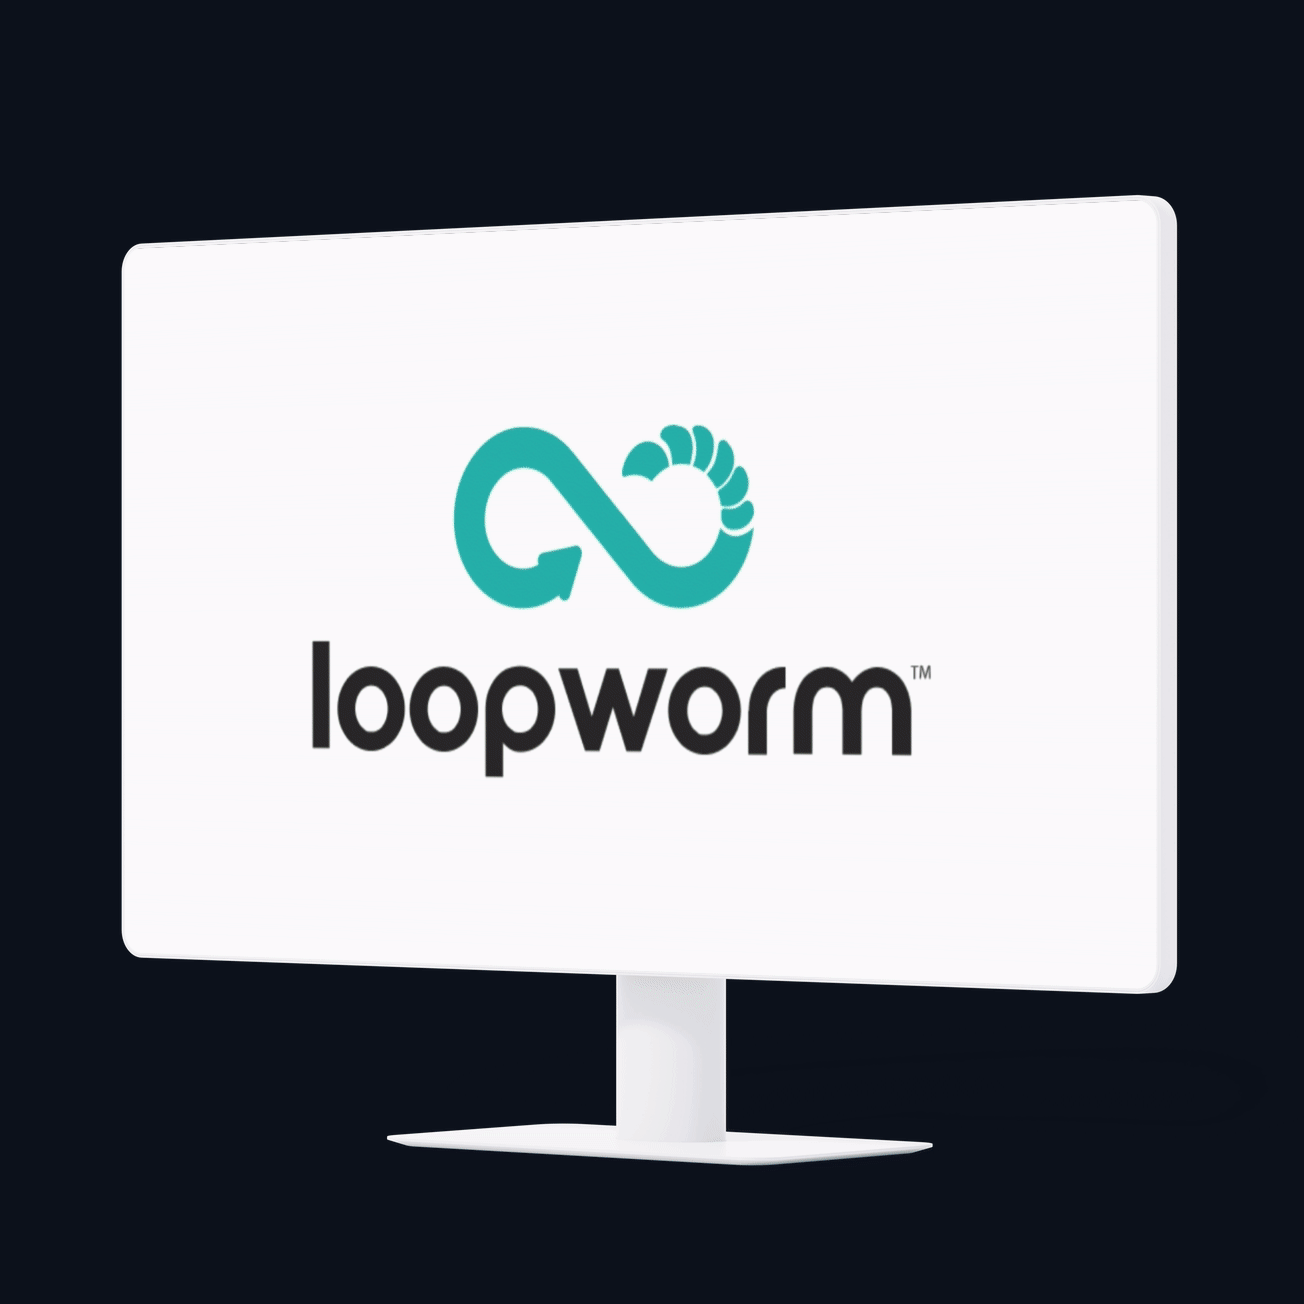 Loopworm